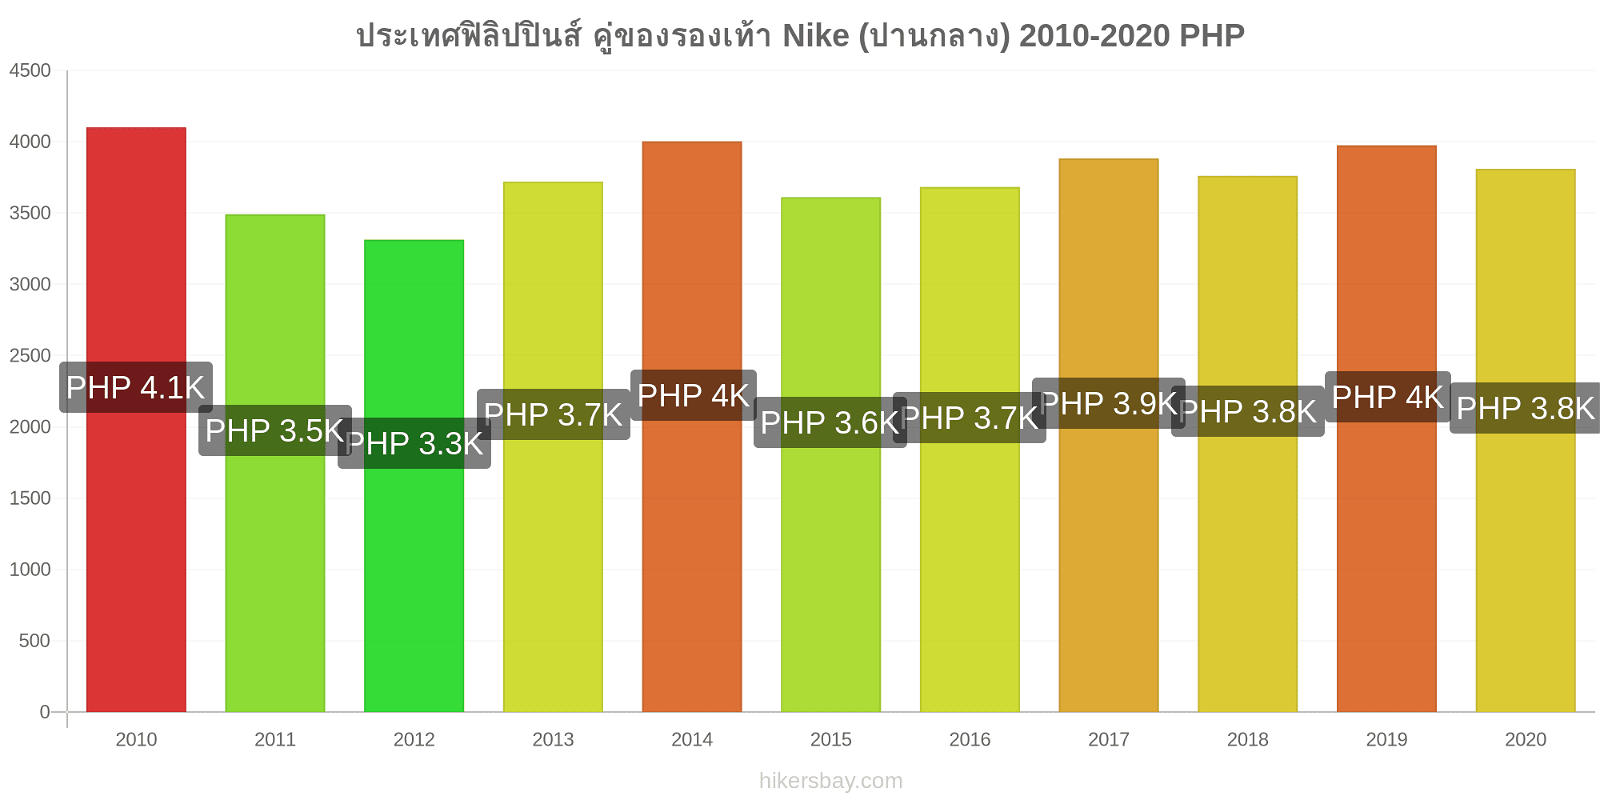 ประเทศฟิลิปปินส์ การเปลี่ยนแปลงราคา คู่ของรองเท้า Nike (ปานกลาง) hikersbay.com